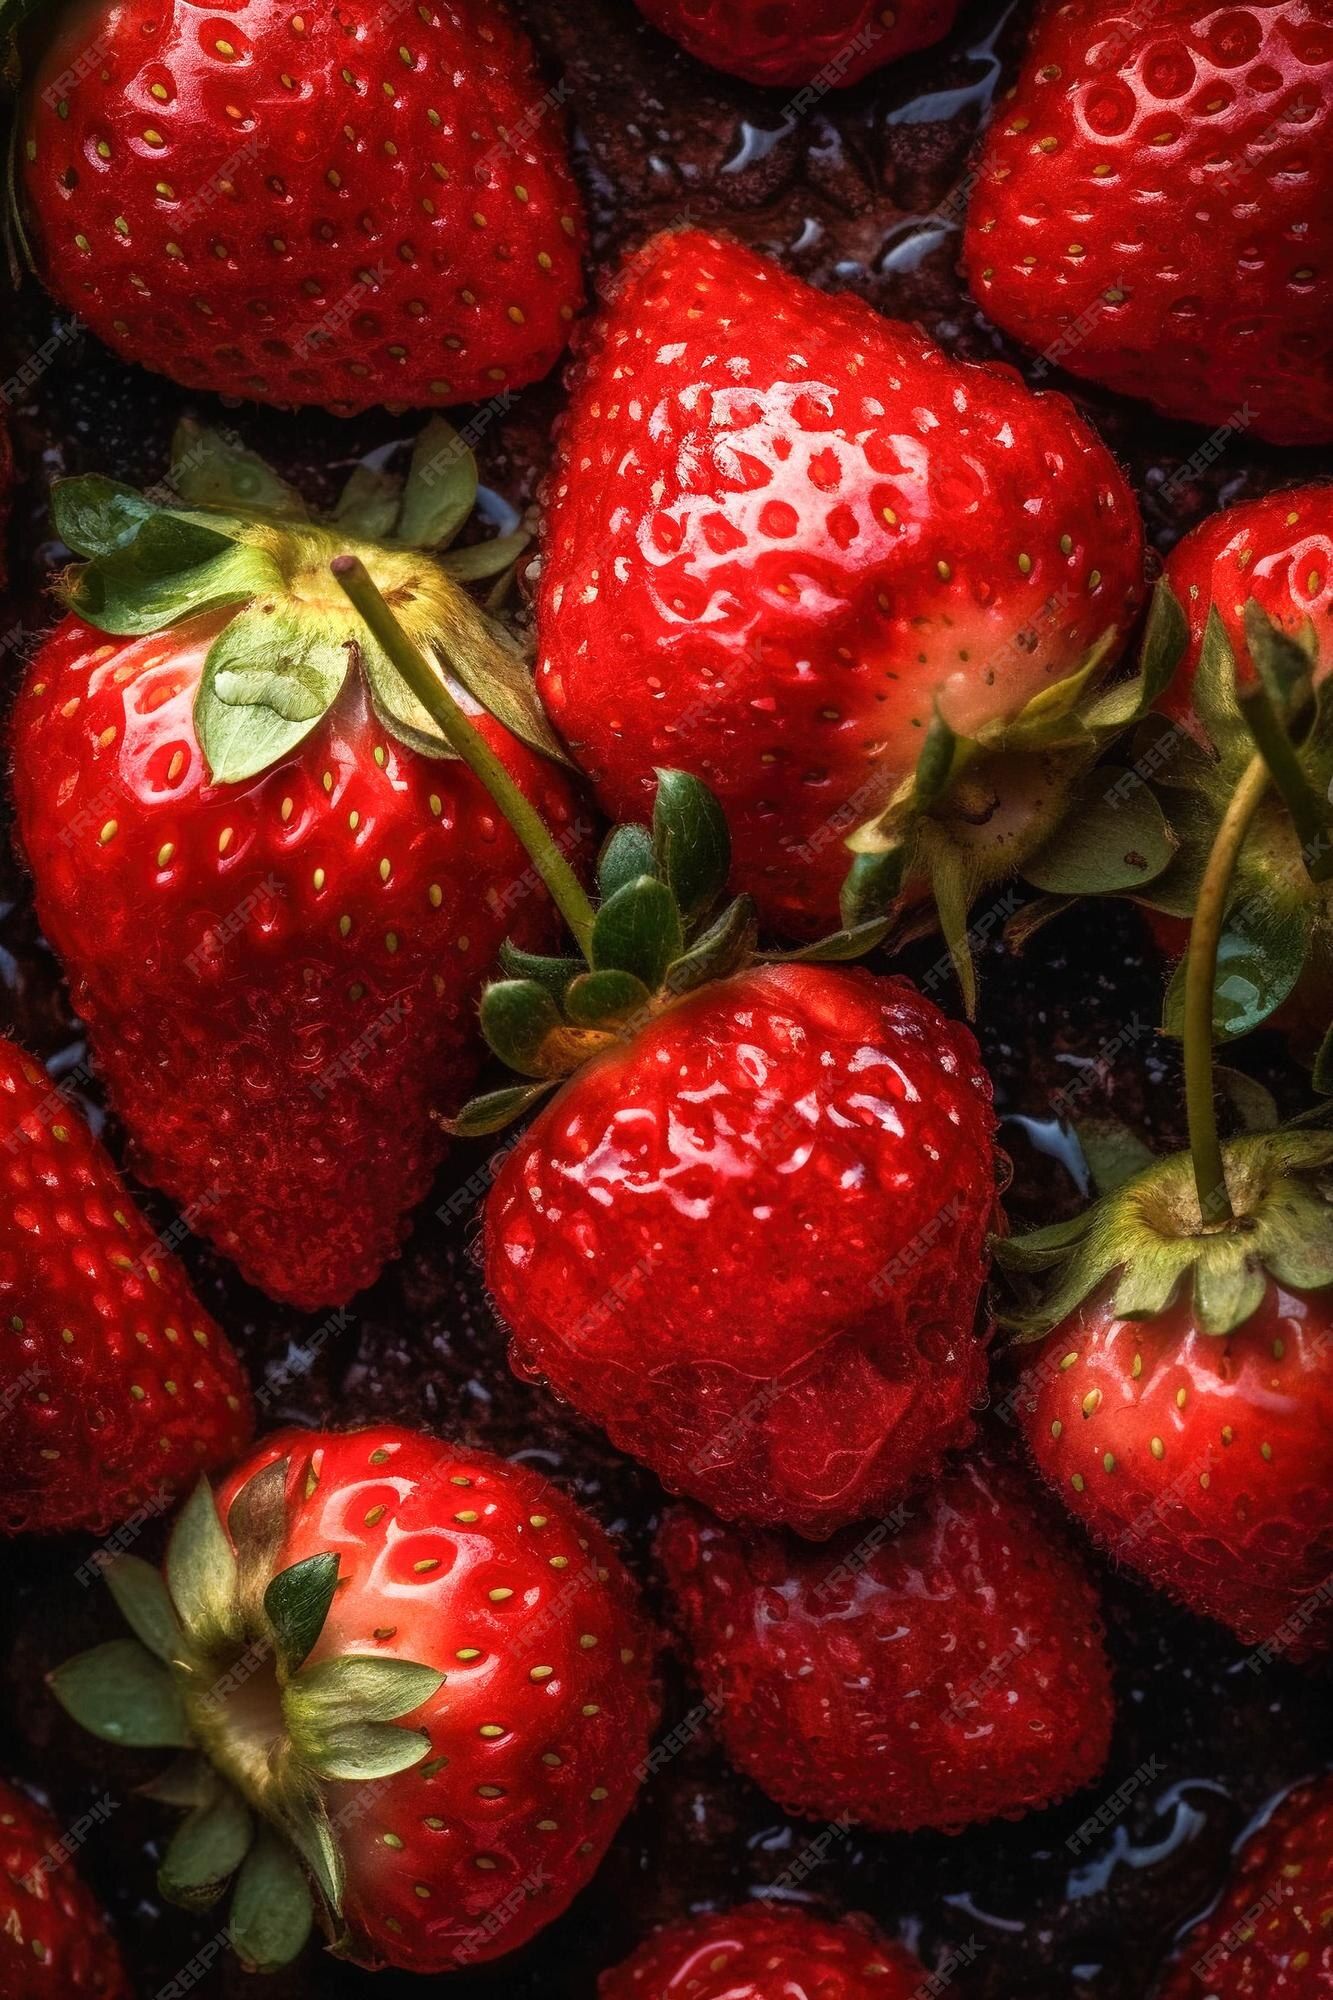  Erdbeeren Hintergrundbild 1333x2000. Eine nahaufnahme von erdbeeren auf einem teller